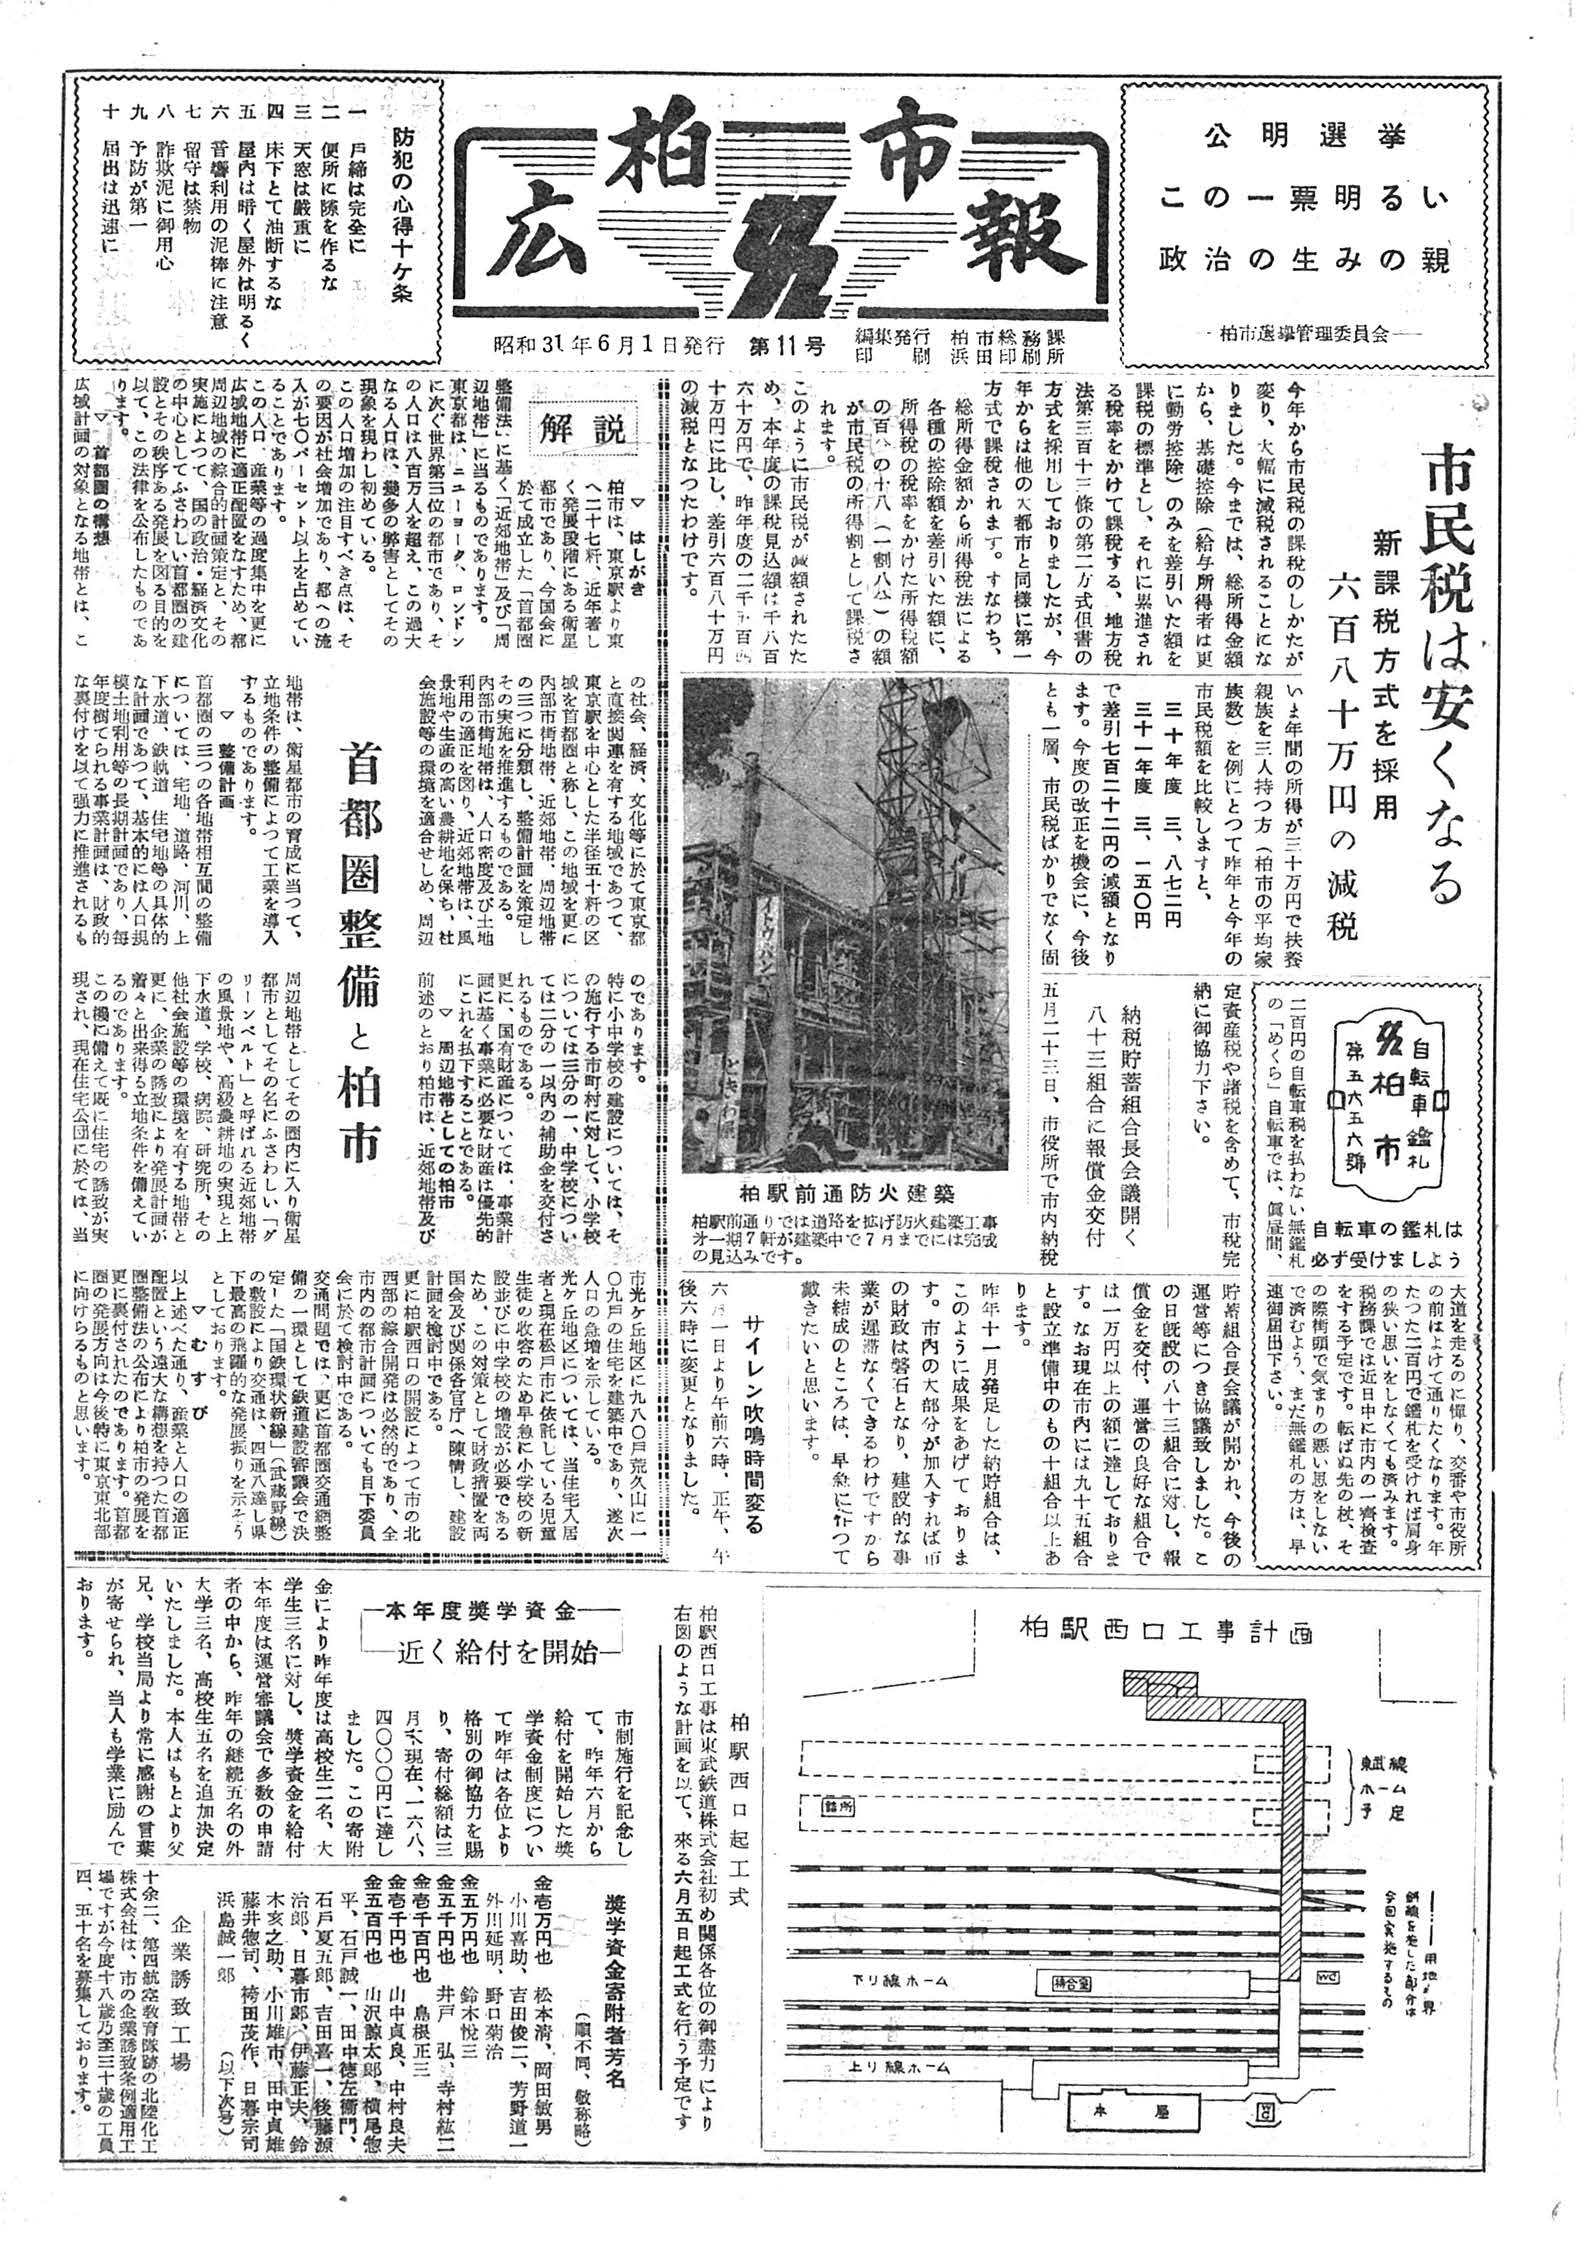 広報かしわ　昭和31年6月1日発行　11号